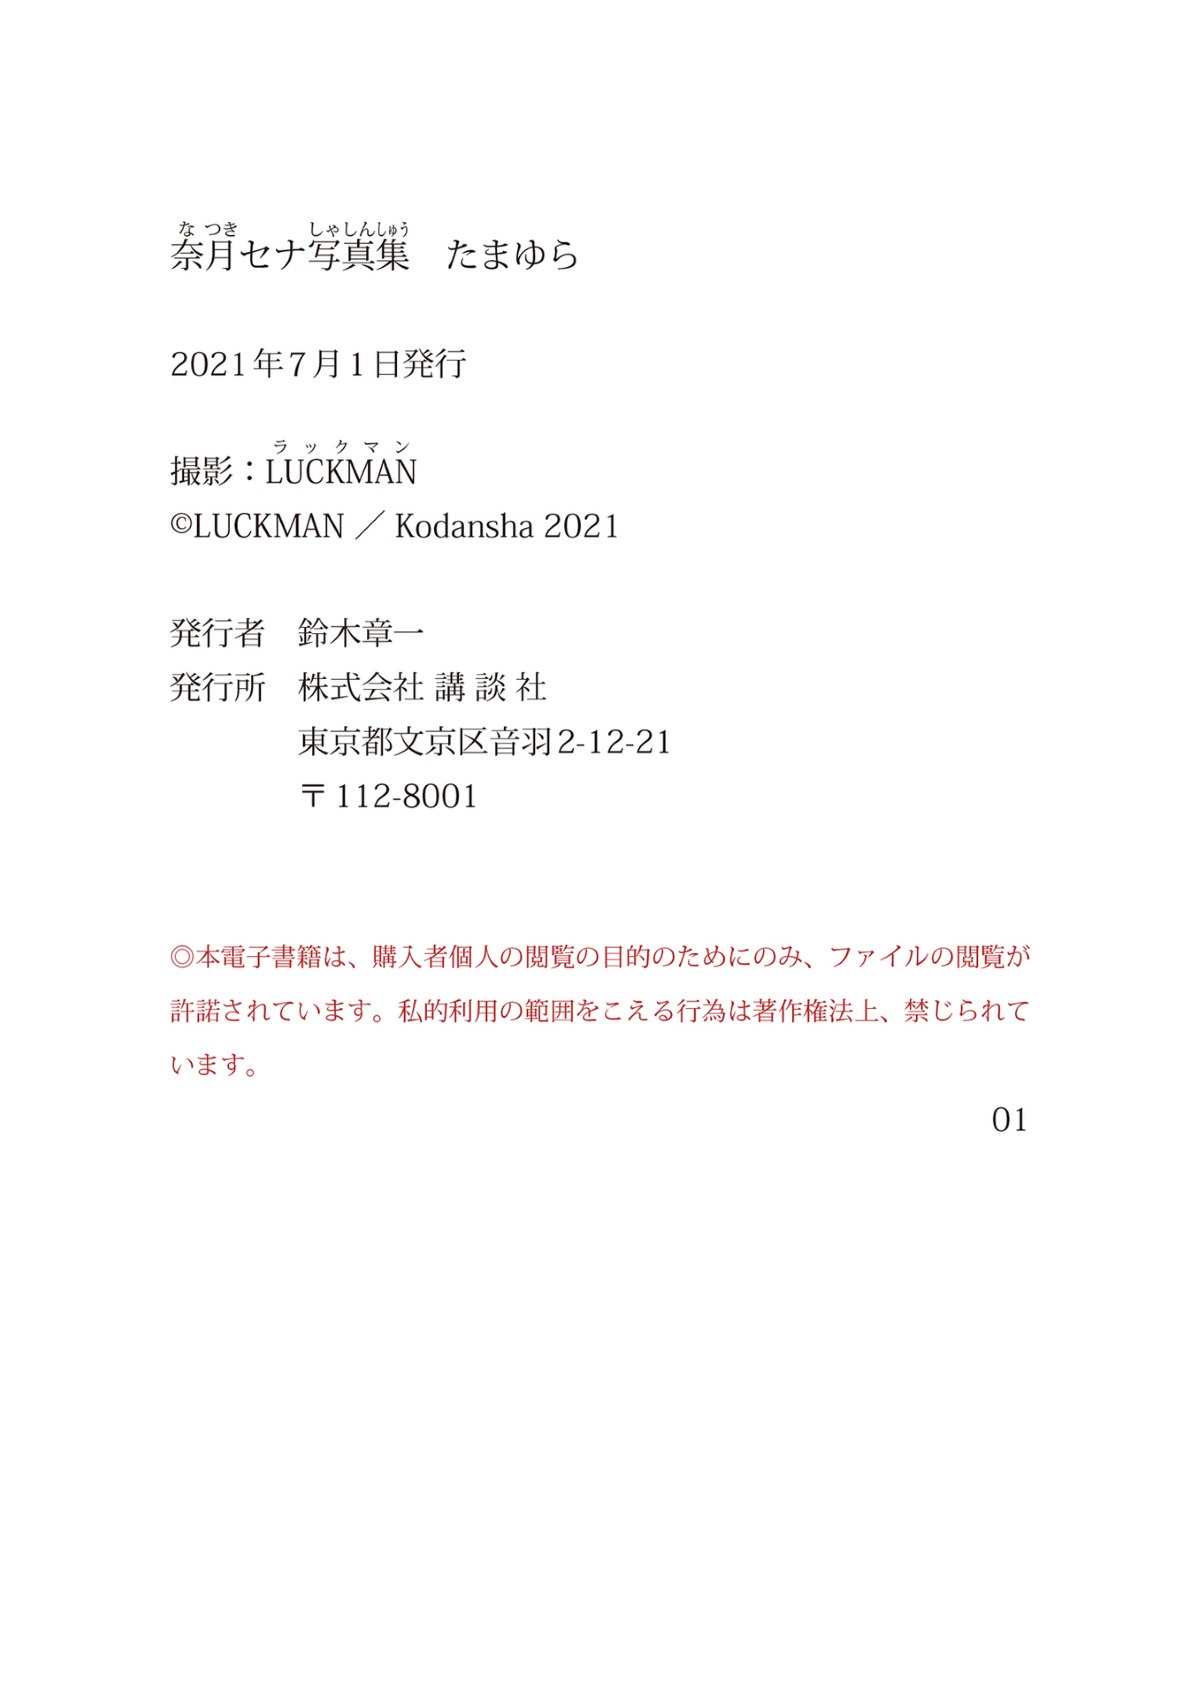 Photobook 2021 06 24 Sena Natsuki 奈月 Photobook Tamayura 0114 6188187547.jpg